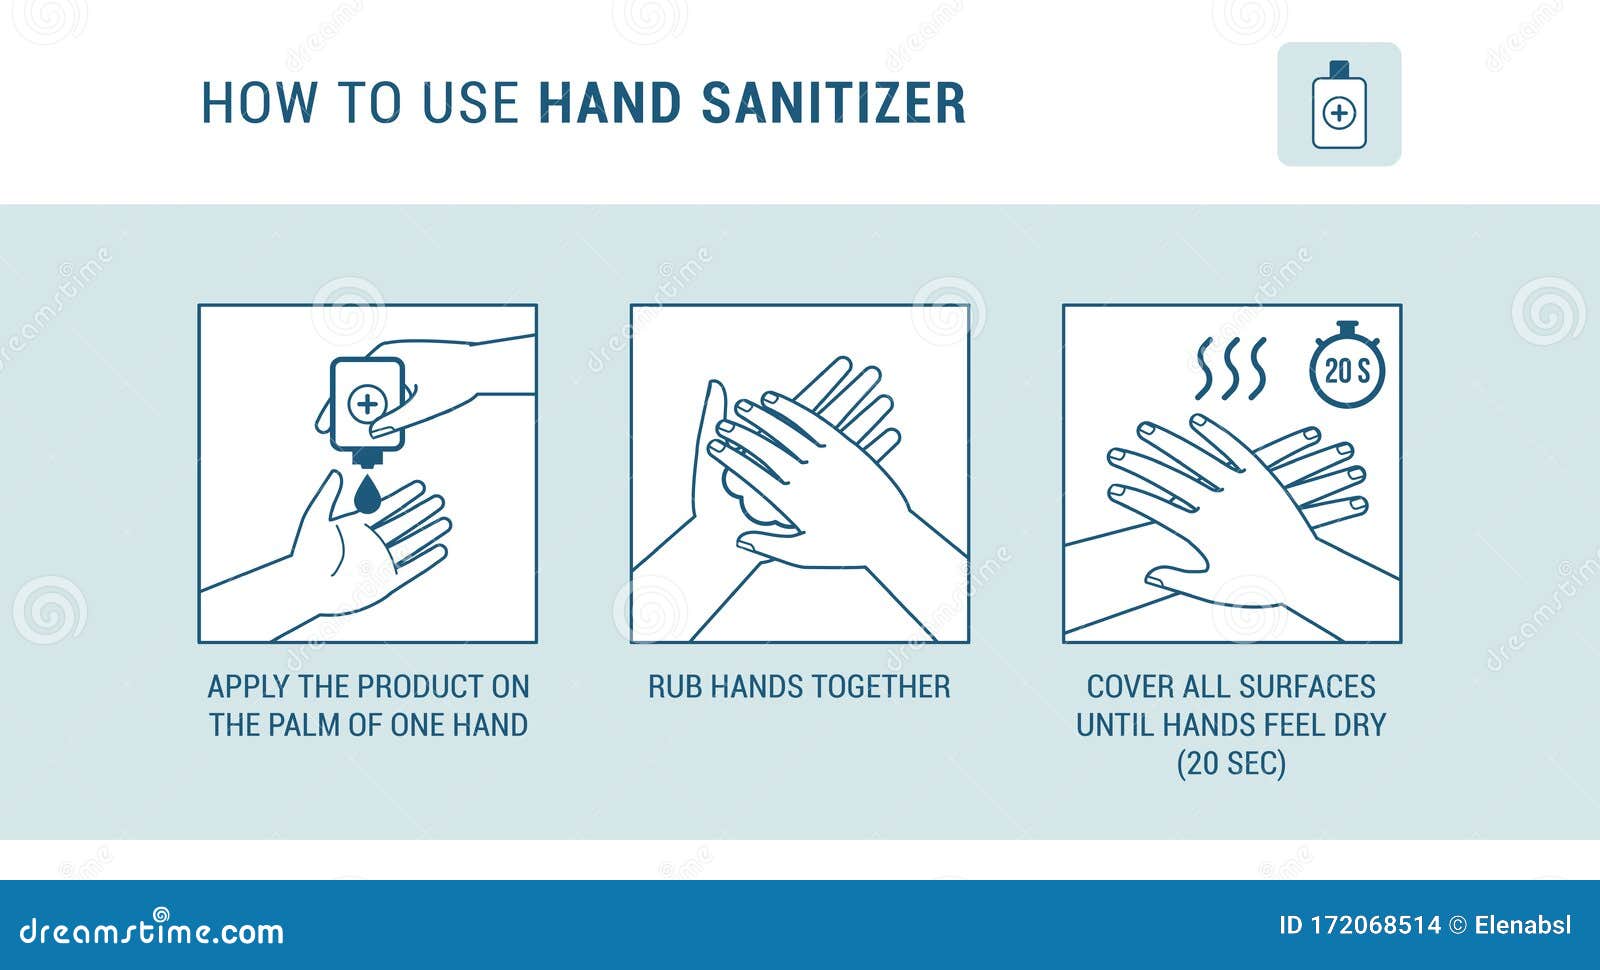 Крем для рук инфографика. Медицинские плакаты мытье рук. Ладонь инфографика. How to choose the right hand Sanitizer. Use your hands